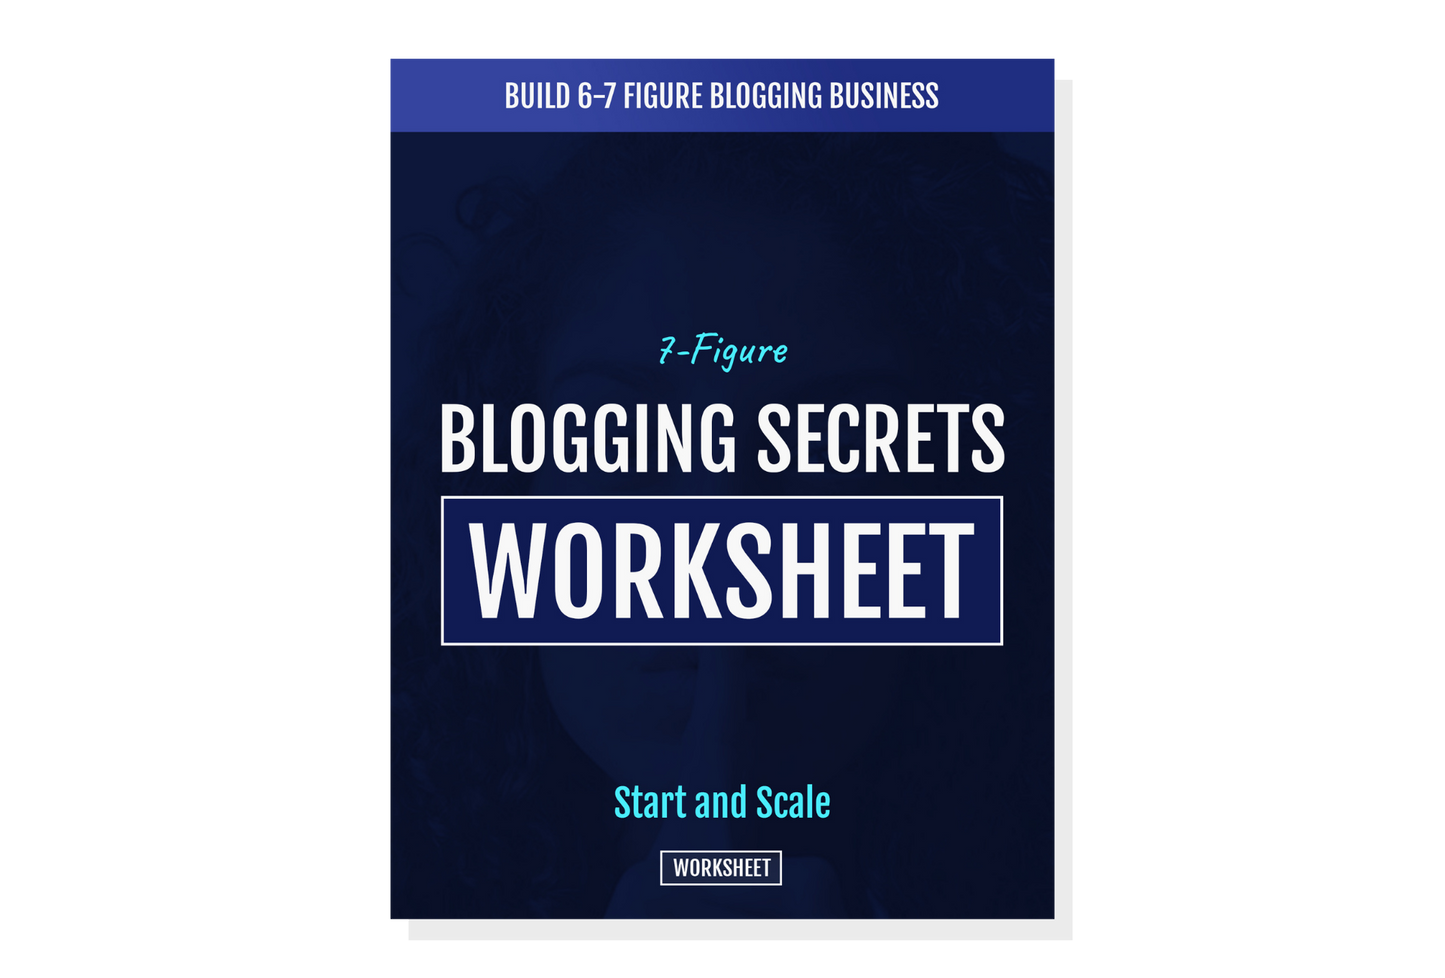 Blogging Secrets Worksheet